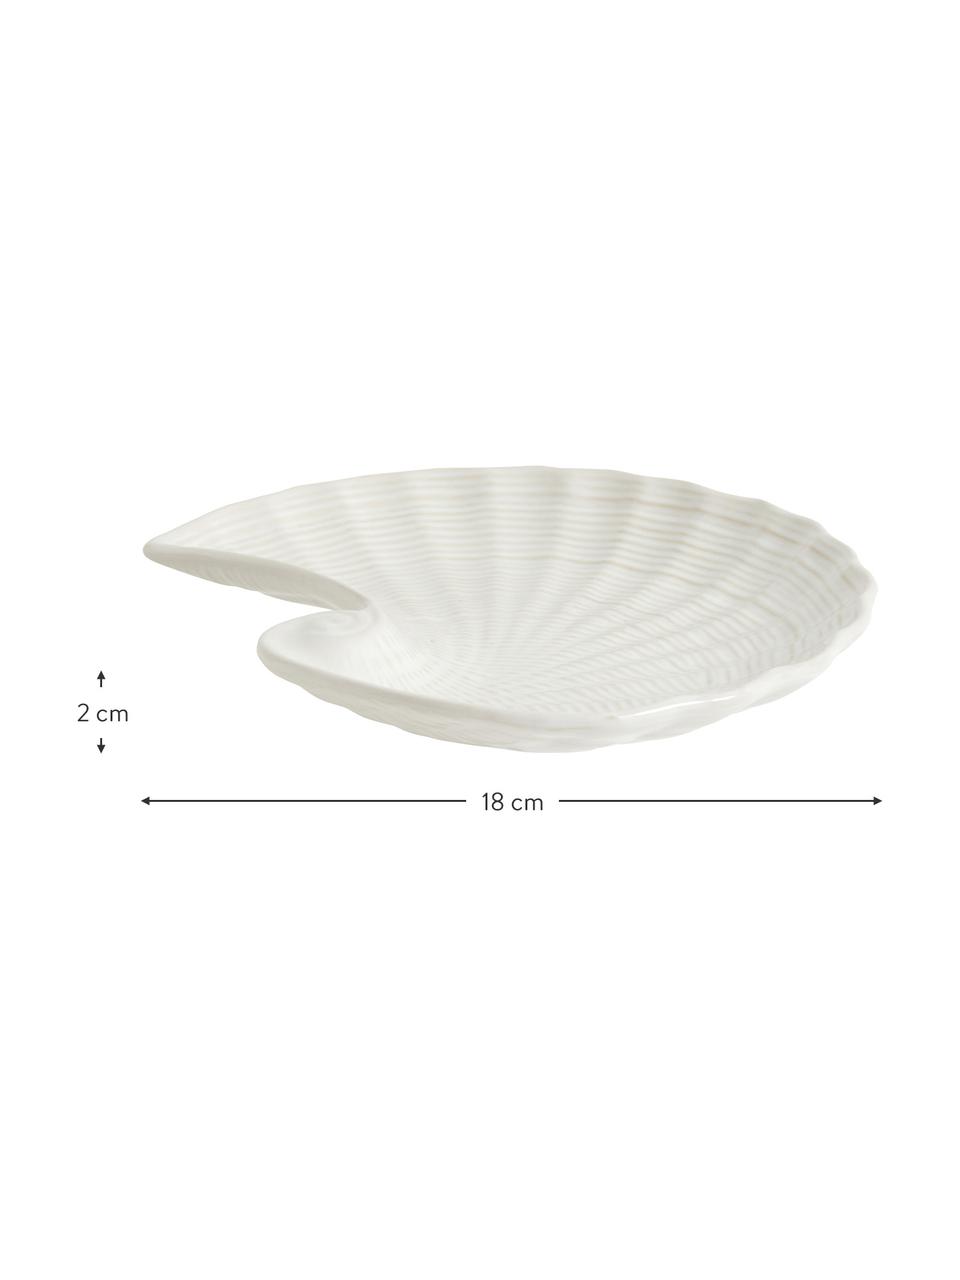 Deko-Schale Gullfoss, B 18 cm, Keramik, Weiss, B 18 x H 2 cm